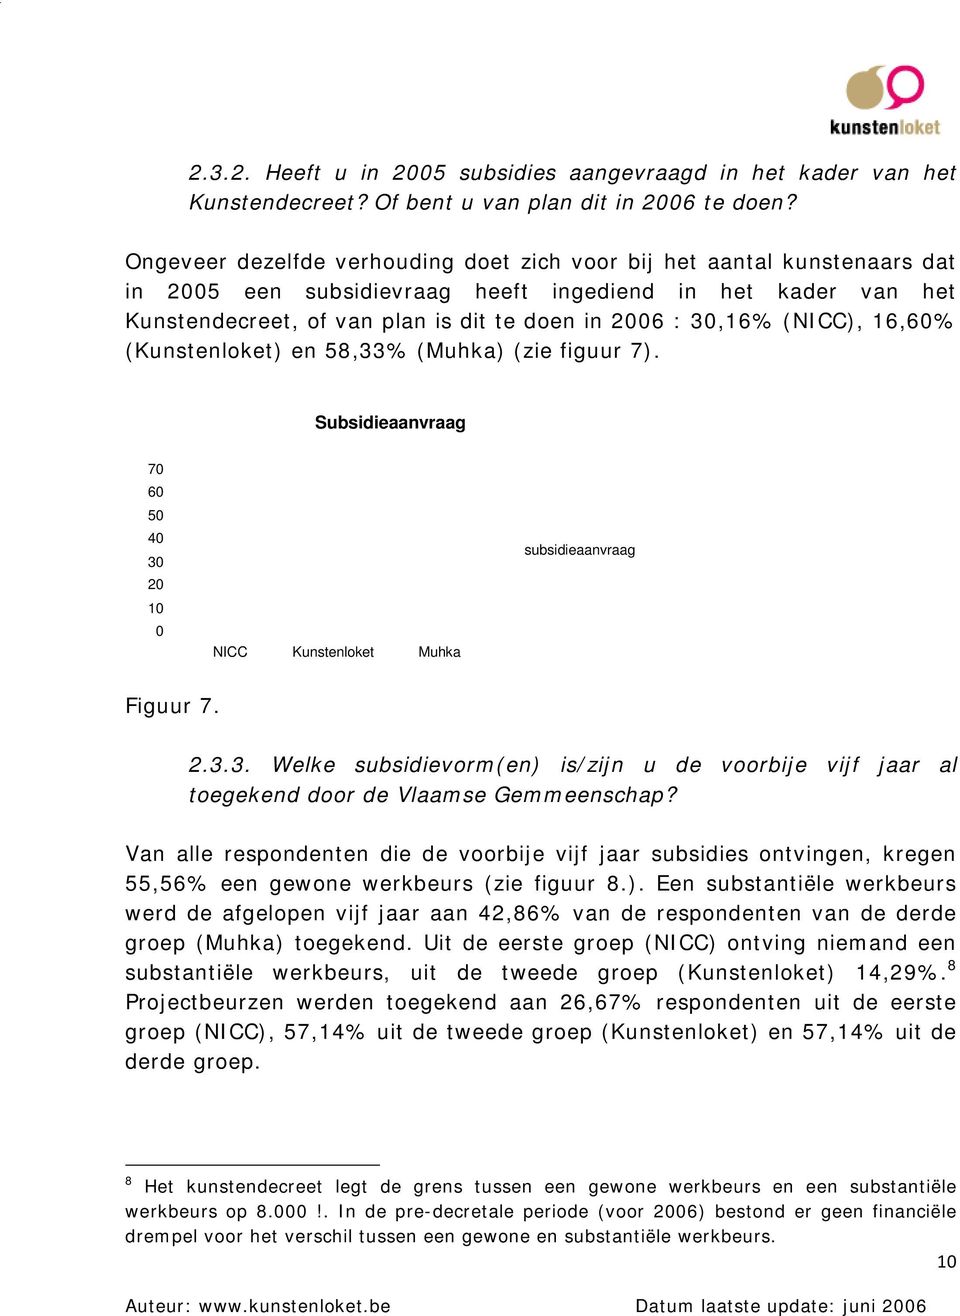 16,6% (Kunstenloket) en 58,33% (Muhka) (zie figuur 7). Subsidieaanvraag 7 6 NICC Kunstenloket Muhka subsidieaanvraag Figuur 7. 2.3.3. Welke subsidievorm(en) is/zijn u de voorbije vijf jaar al toegekend door de Vlaamse Gemmeenschap?